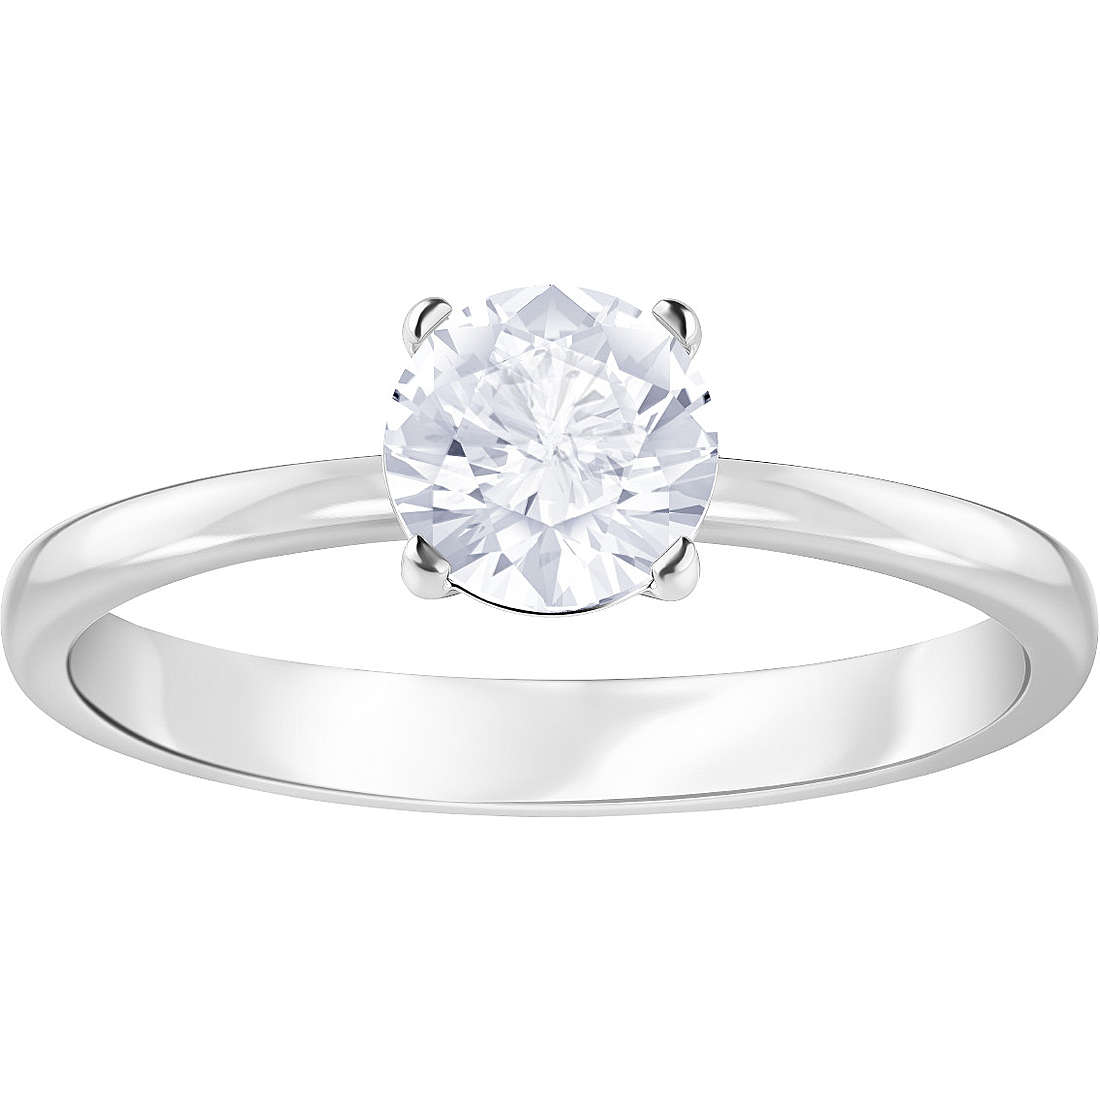 anello donna gioielli Swarovski Attract Round 5402428